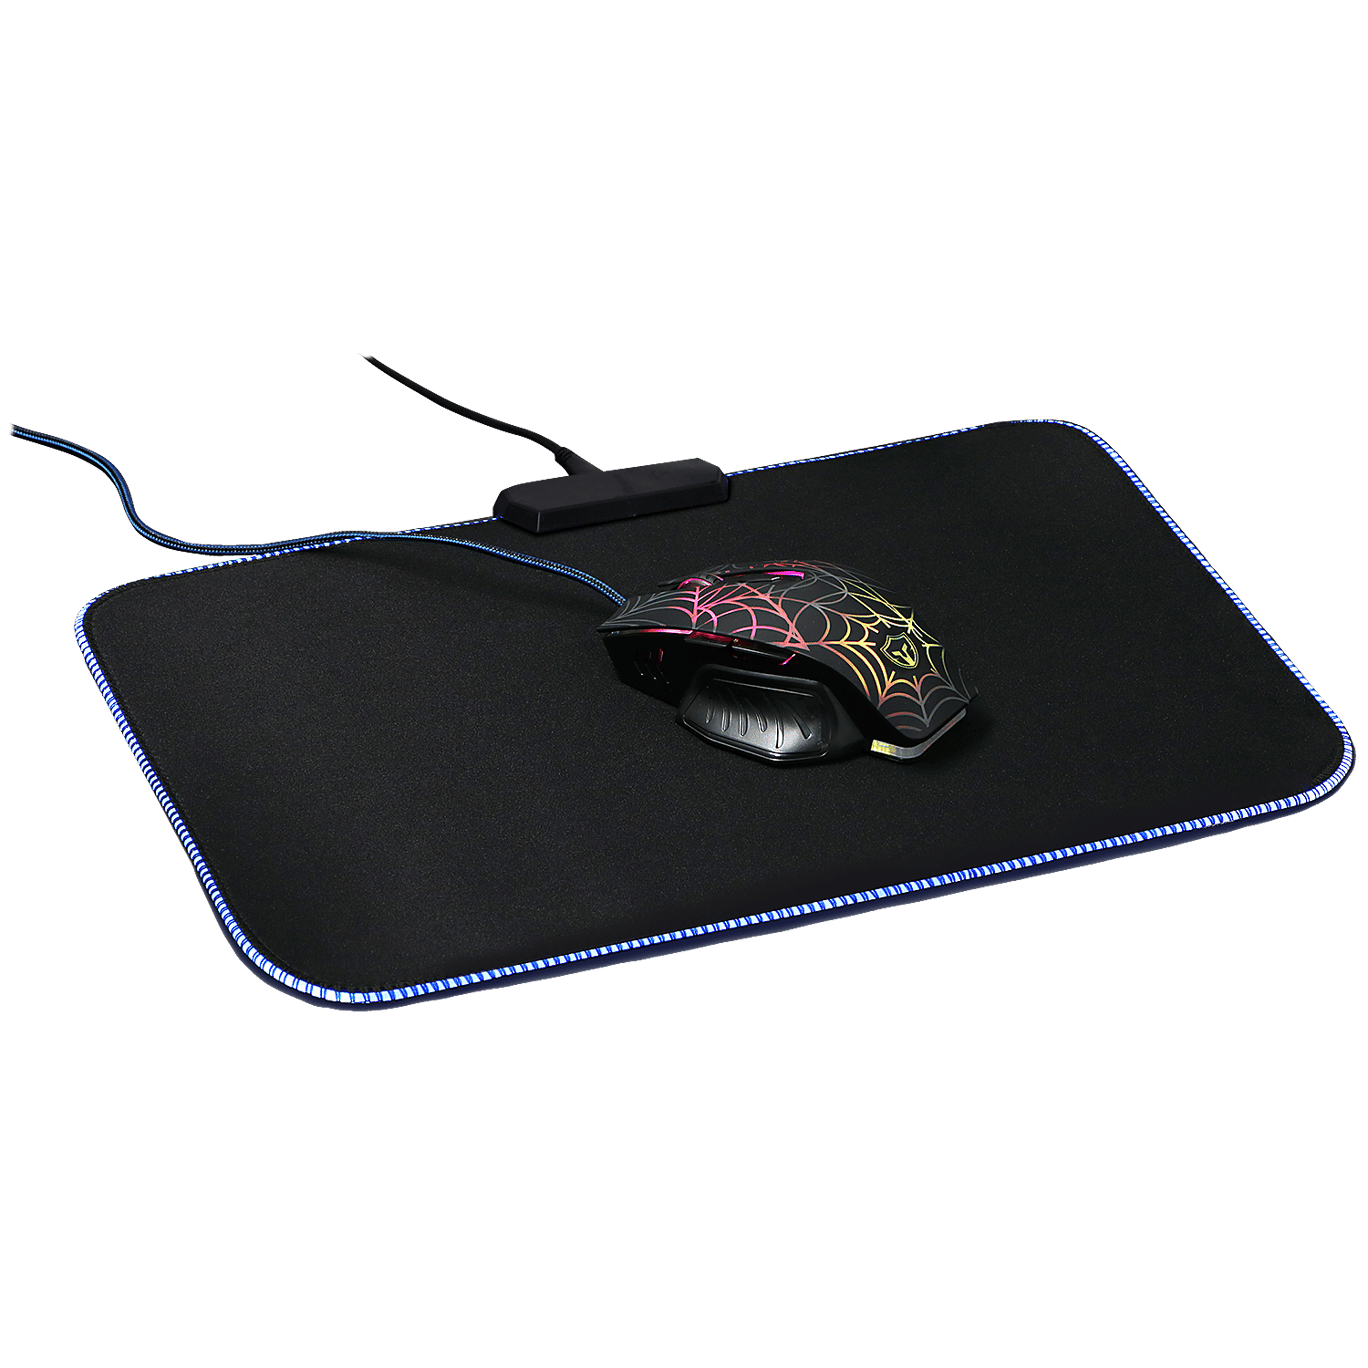 UXRONE Tapis de Souris Gamer Surface Lisse Mouse Pad Gaming avec Base en Caoutchouc Anti-dérapant pour Ordinateur Hydrorésistant Confortable 320 x 270 x 2mm 